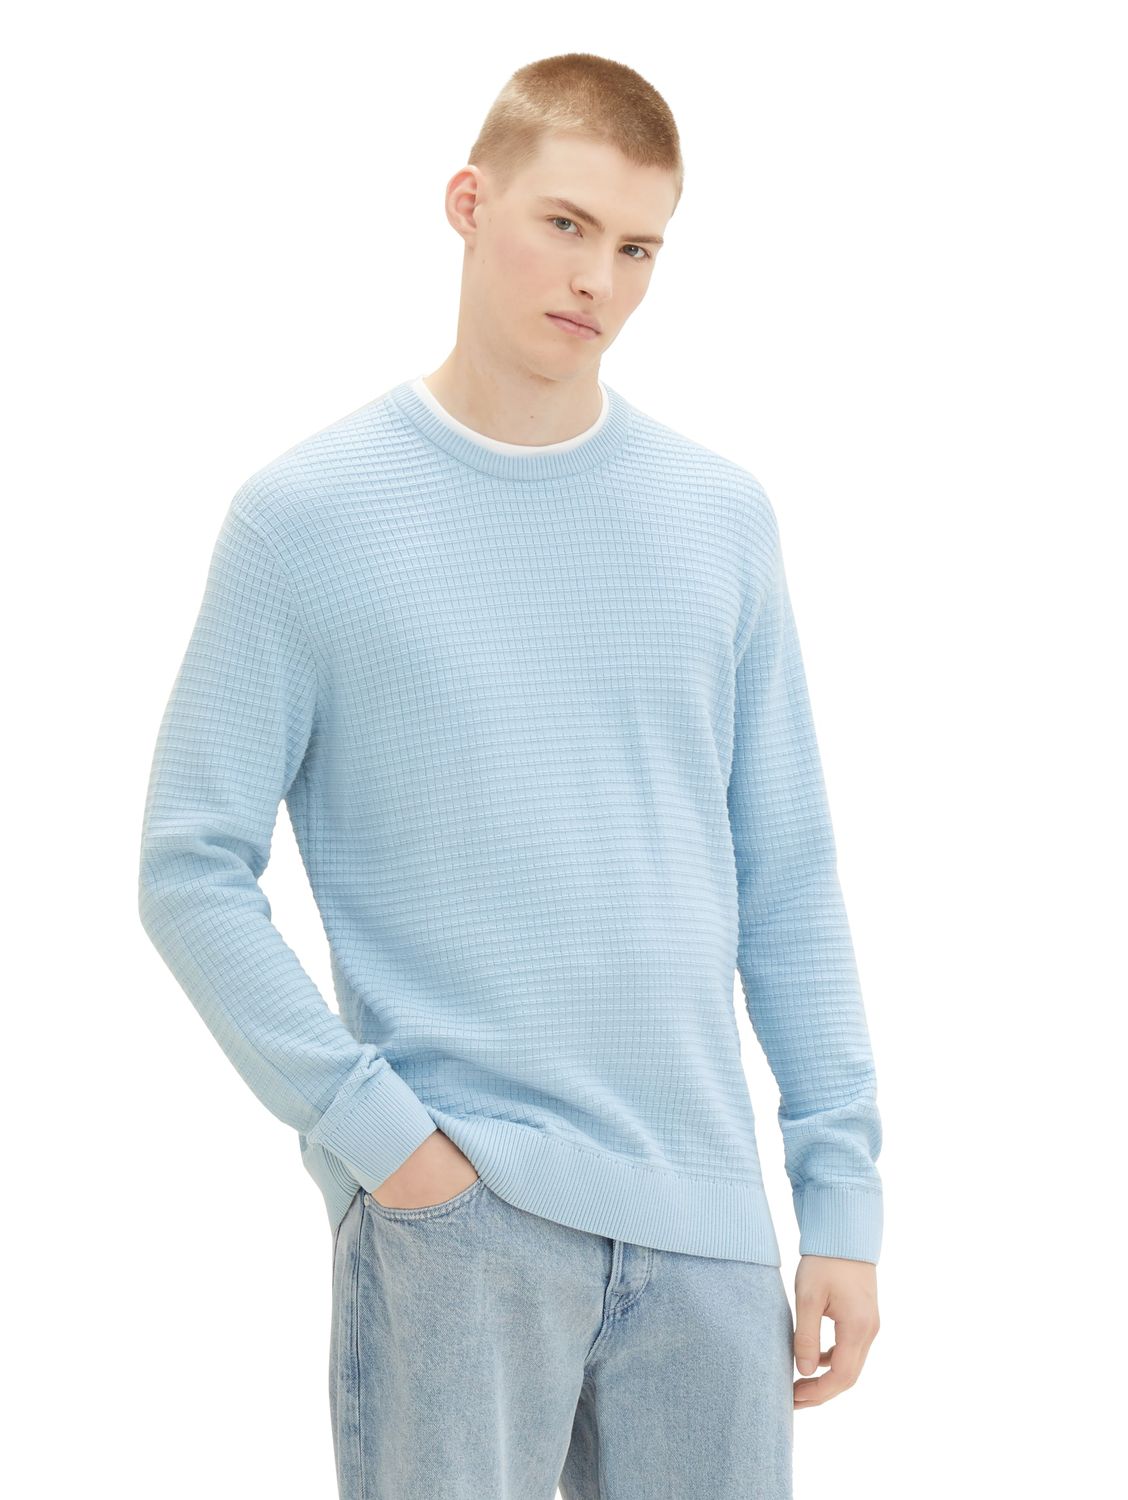 Пуловер TOM TAILOR Denim STRUCTURED DOUBLELAYER, синий пуловер tom tailor denim structured doublelayer бежевый